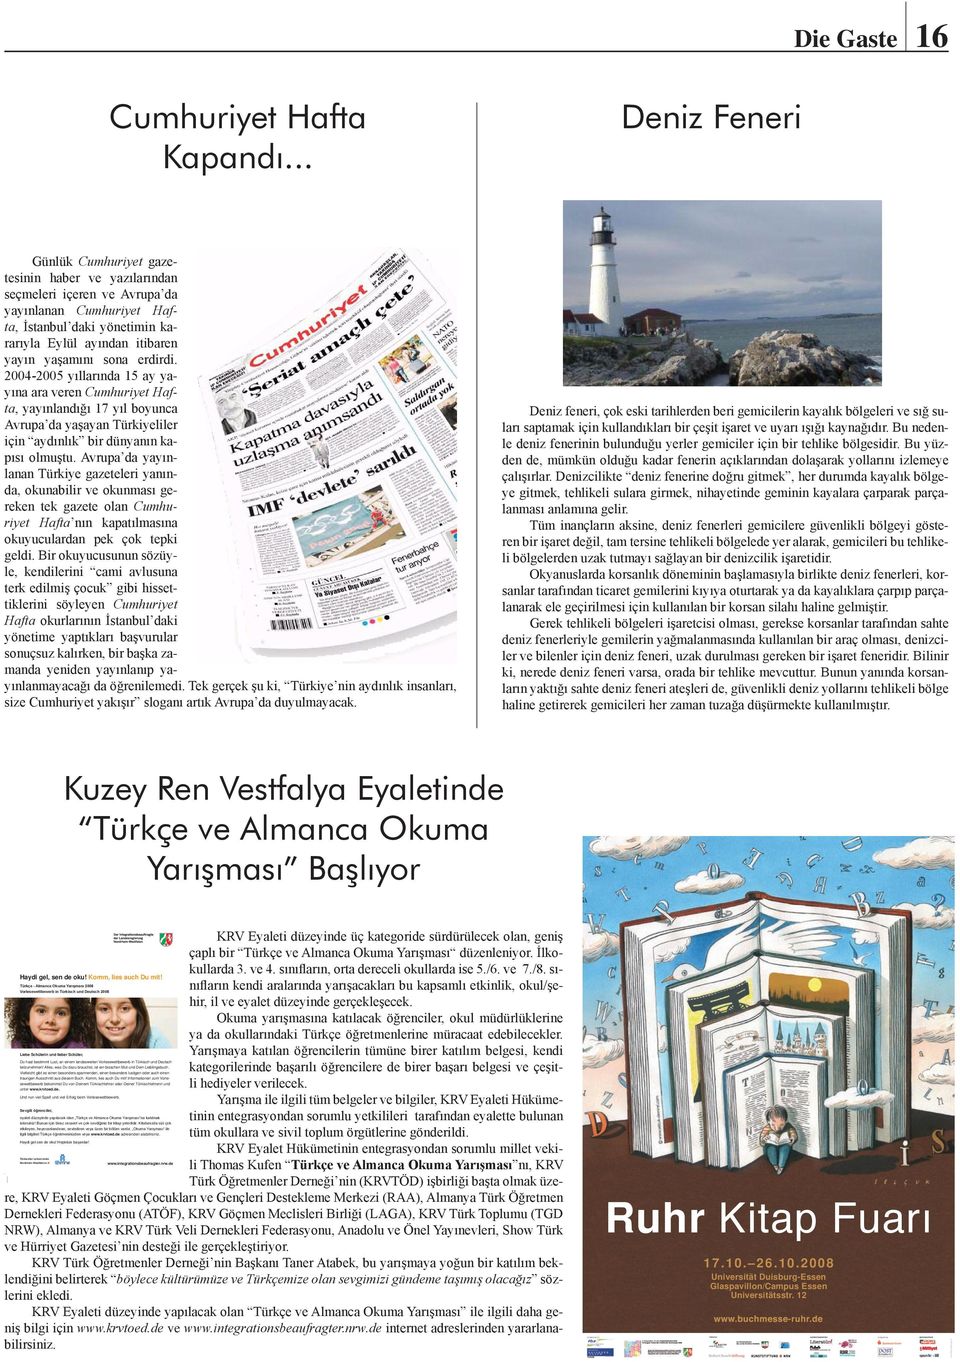 2004-2005 yıllarında 15 ay yayına ara veren Cumhuriyet Hafta, yayınlandığı 17 yıl boyunca Avrupa da yaşayan Türkiyeliler için aydınlık bir dünyanın kapısı olmuştu.